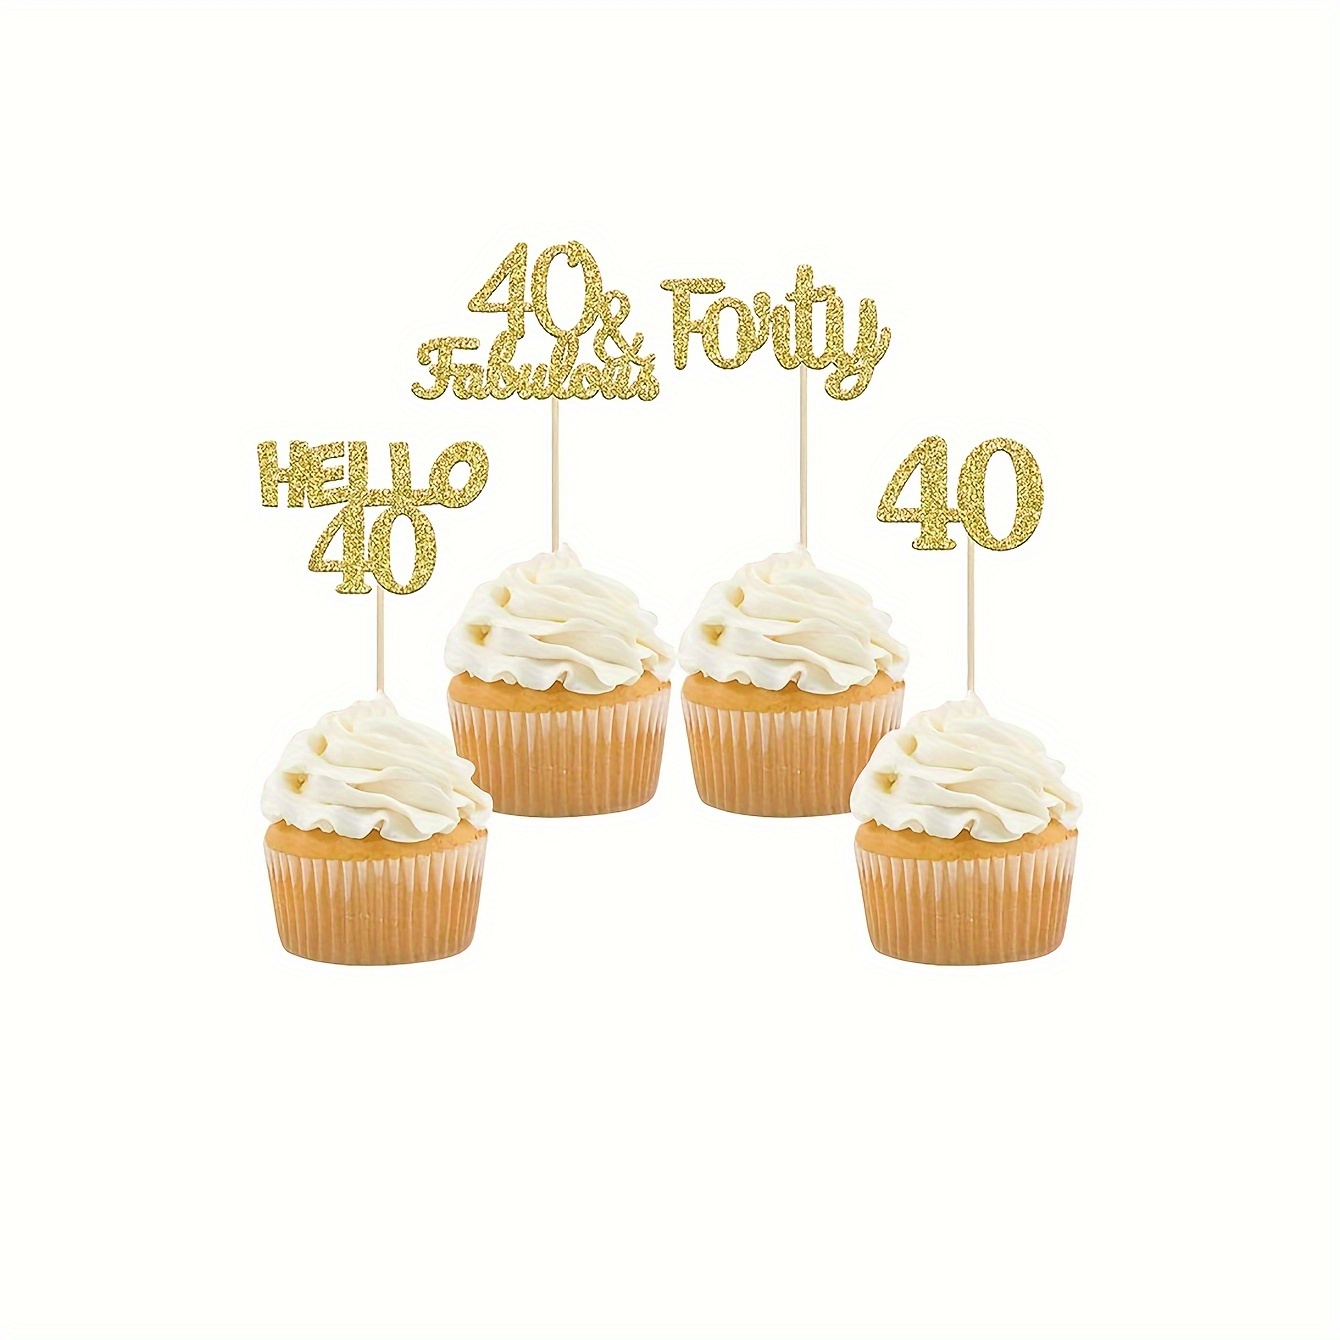 Regalos de cumpleaños de 40 años para mujer, que incluyen corona/tiara,  banda, adorno para pastel y velas de cumpleaños de 40 años; decoraciones de